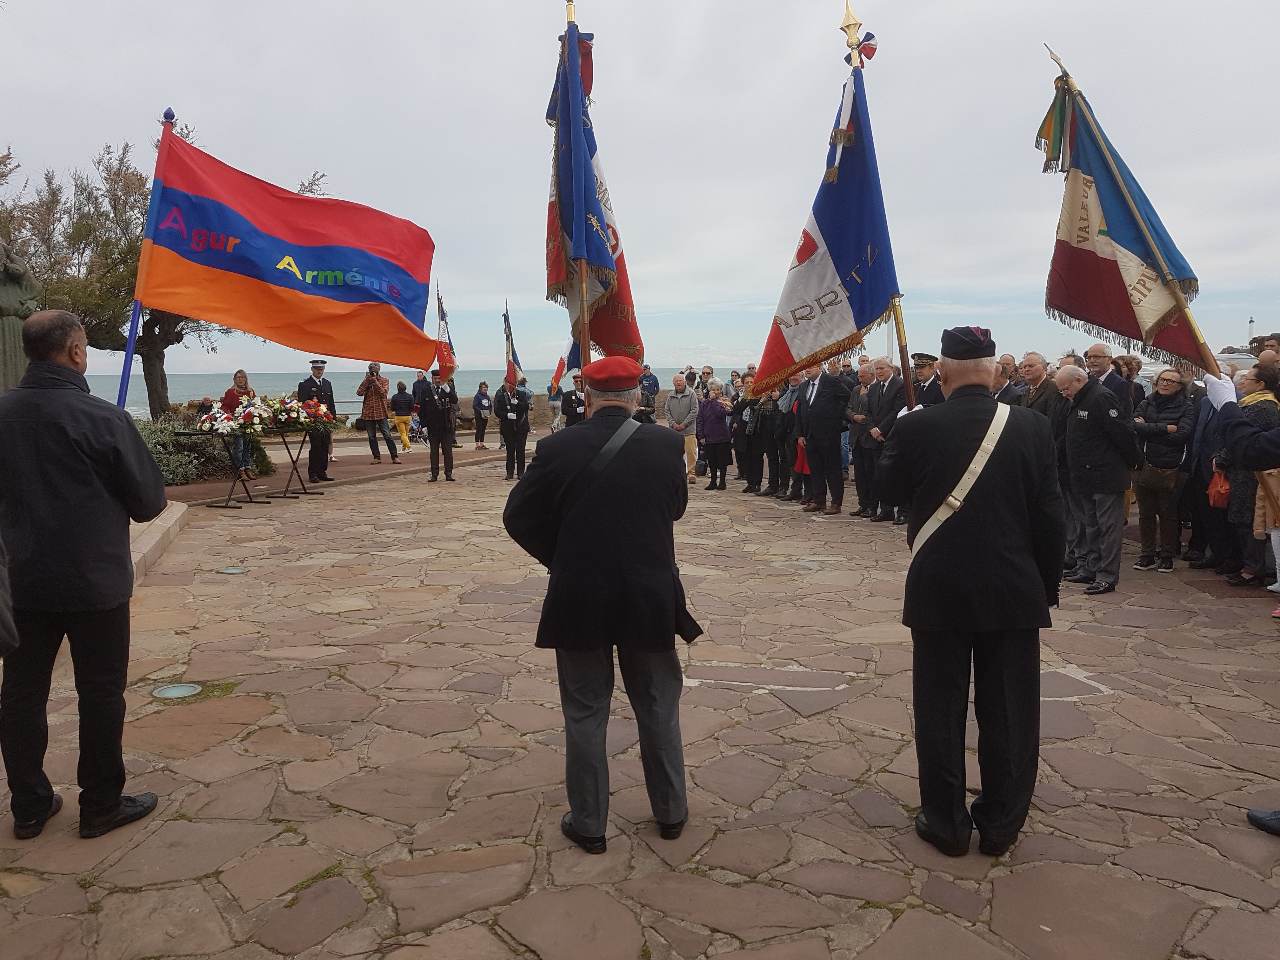 A Biarritz, Agur Arménie commémore le 104ème anniversaire du génocide des Arméniens